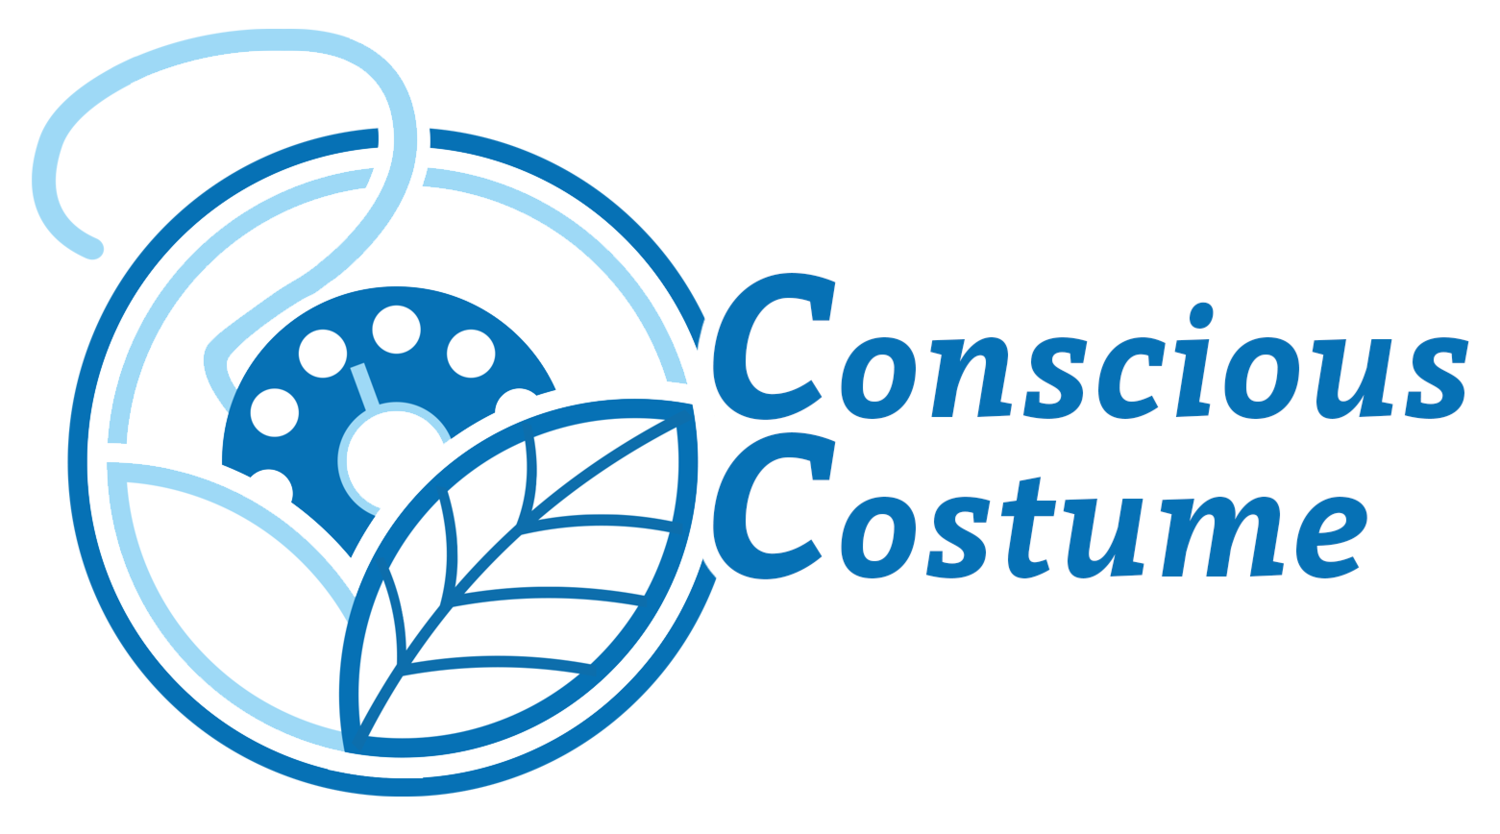 Conscious Costume